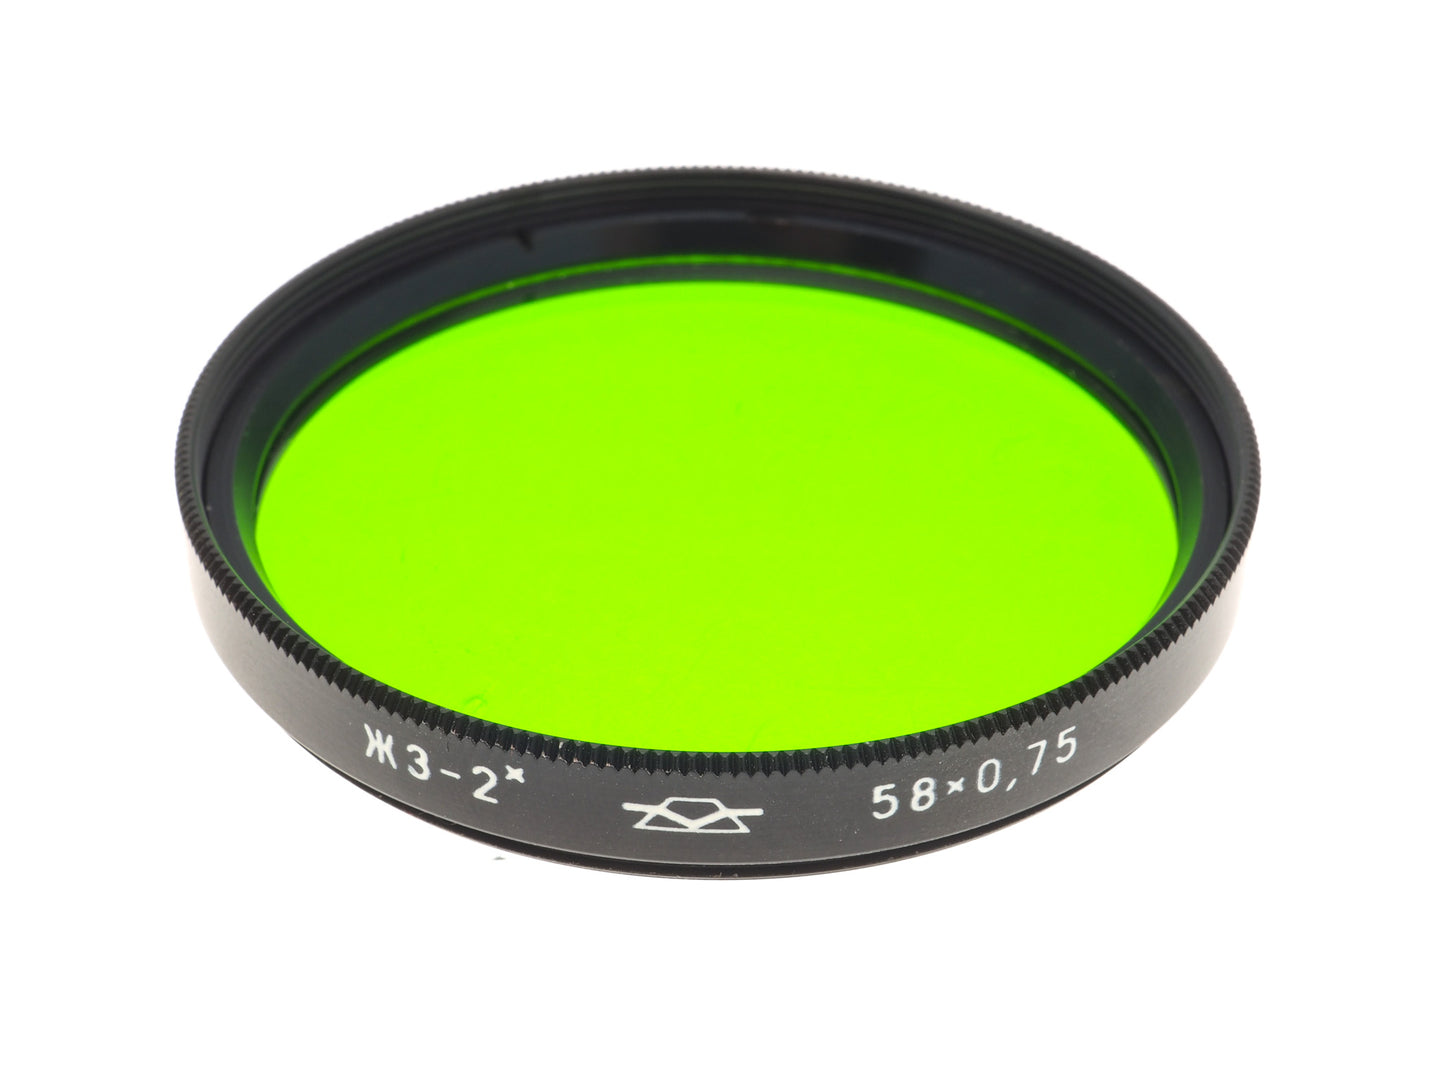 Zenit 58mm Green Filter x0.75 - Accessory